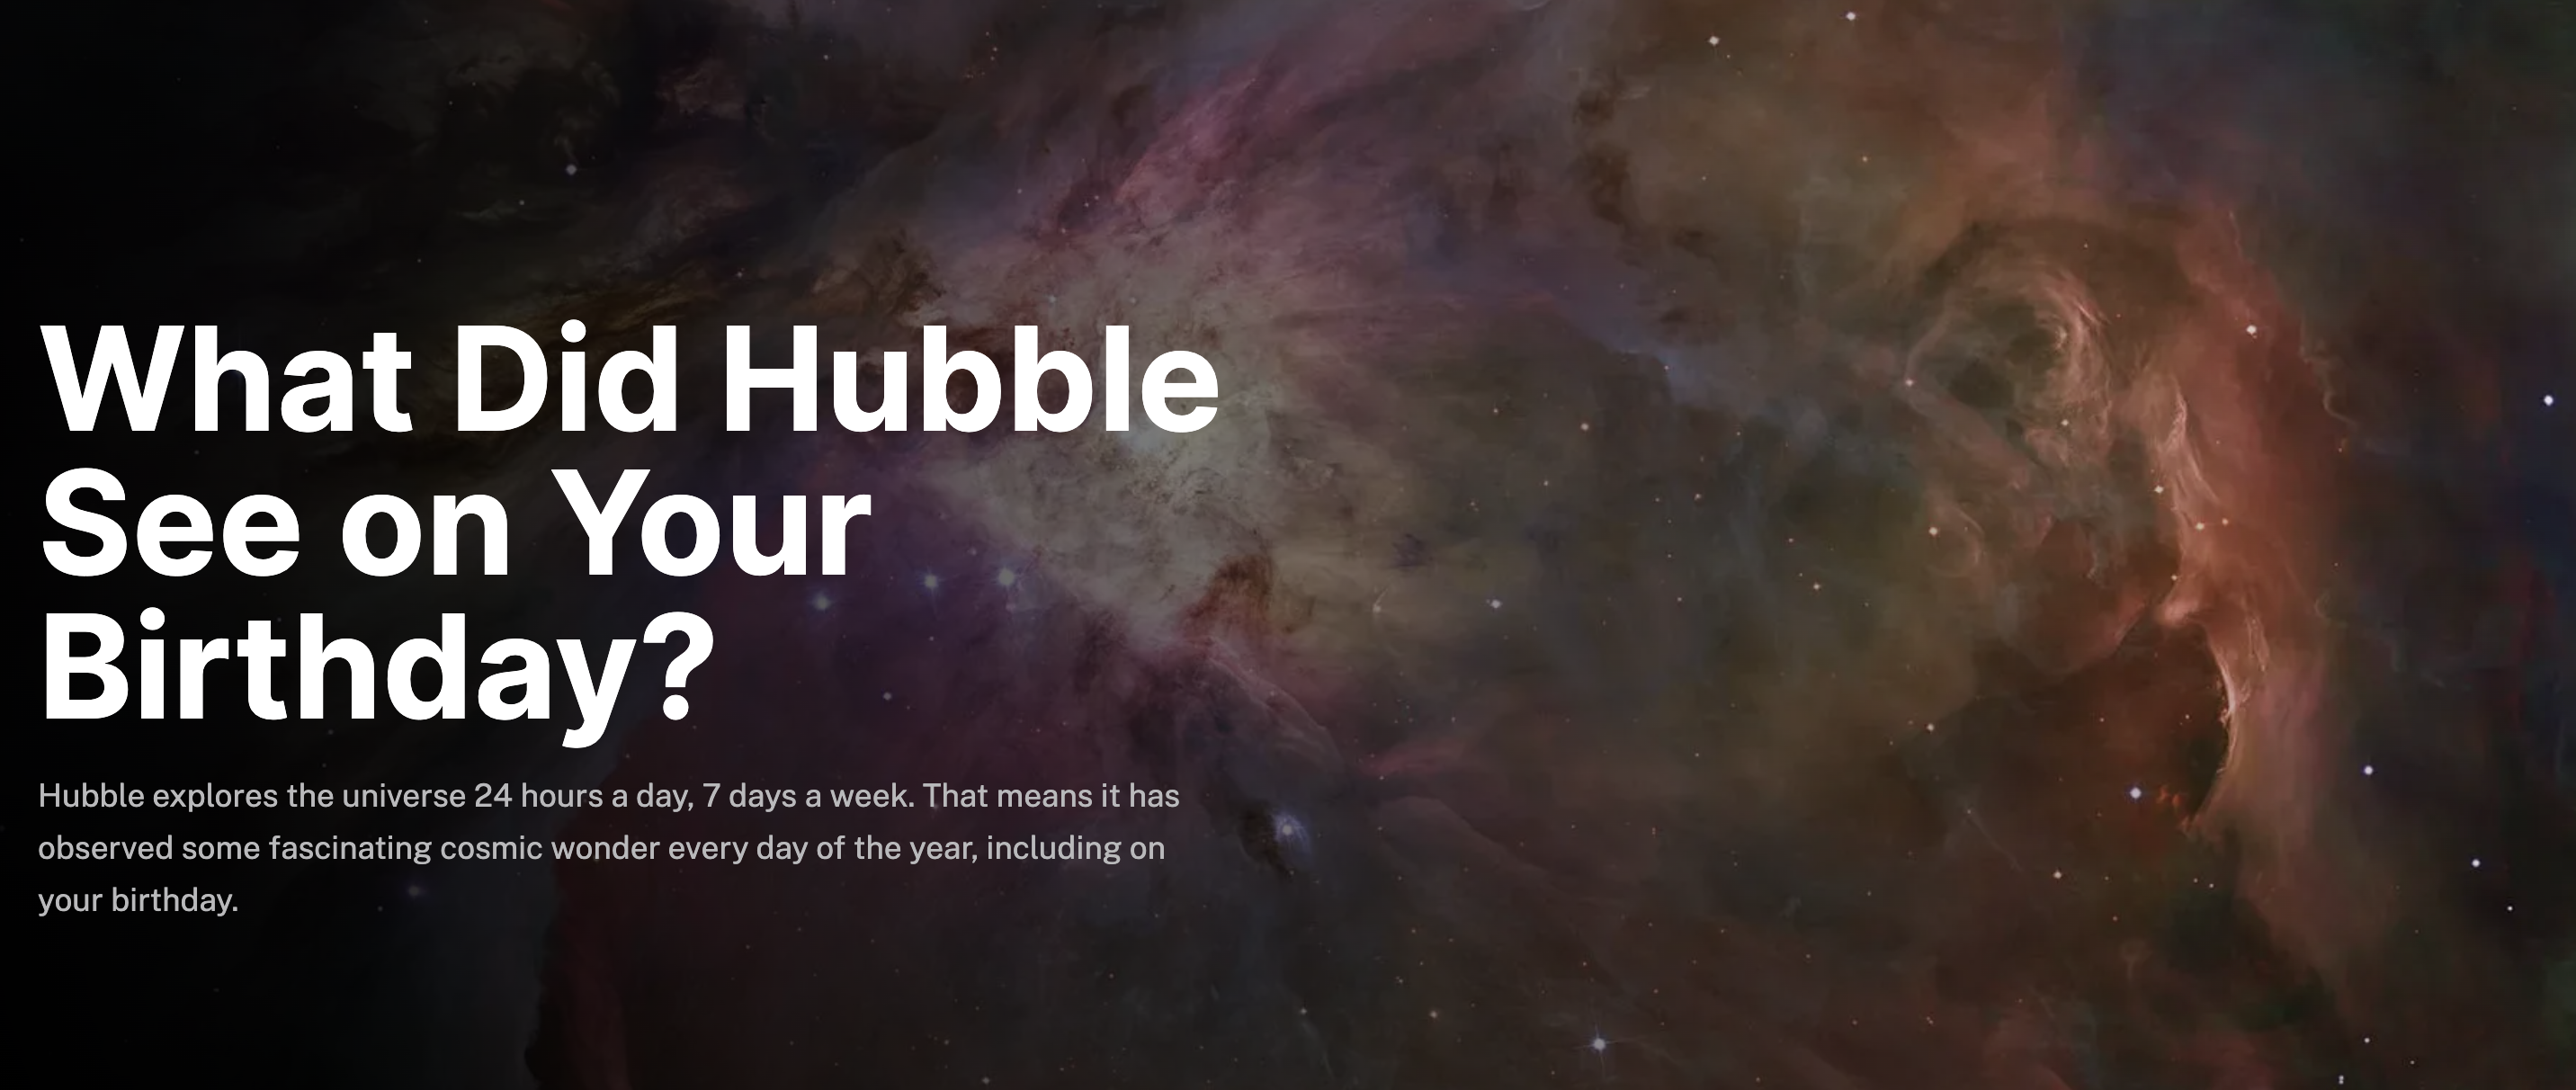 美國太空總署 NASA 為慶祝哈伯太空望遠鏡（Hubble Space Telescope）服務 30 週年，便在官網公開 366 天的星象圖片。（圖片來源：nasa）